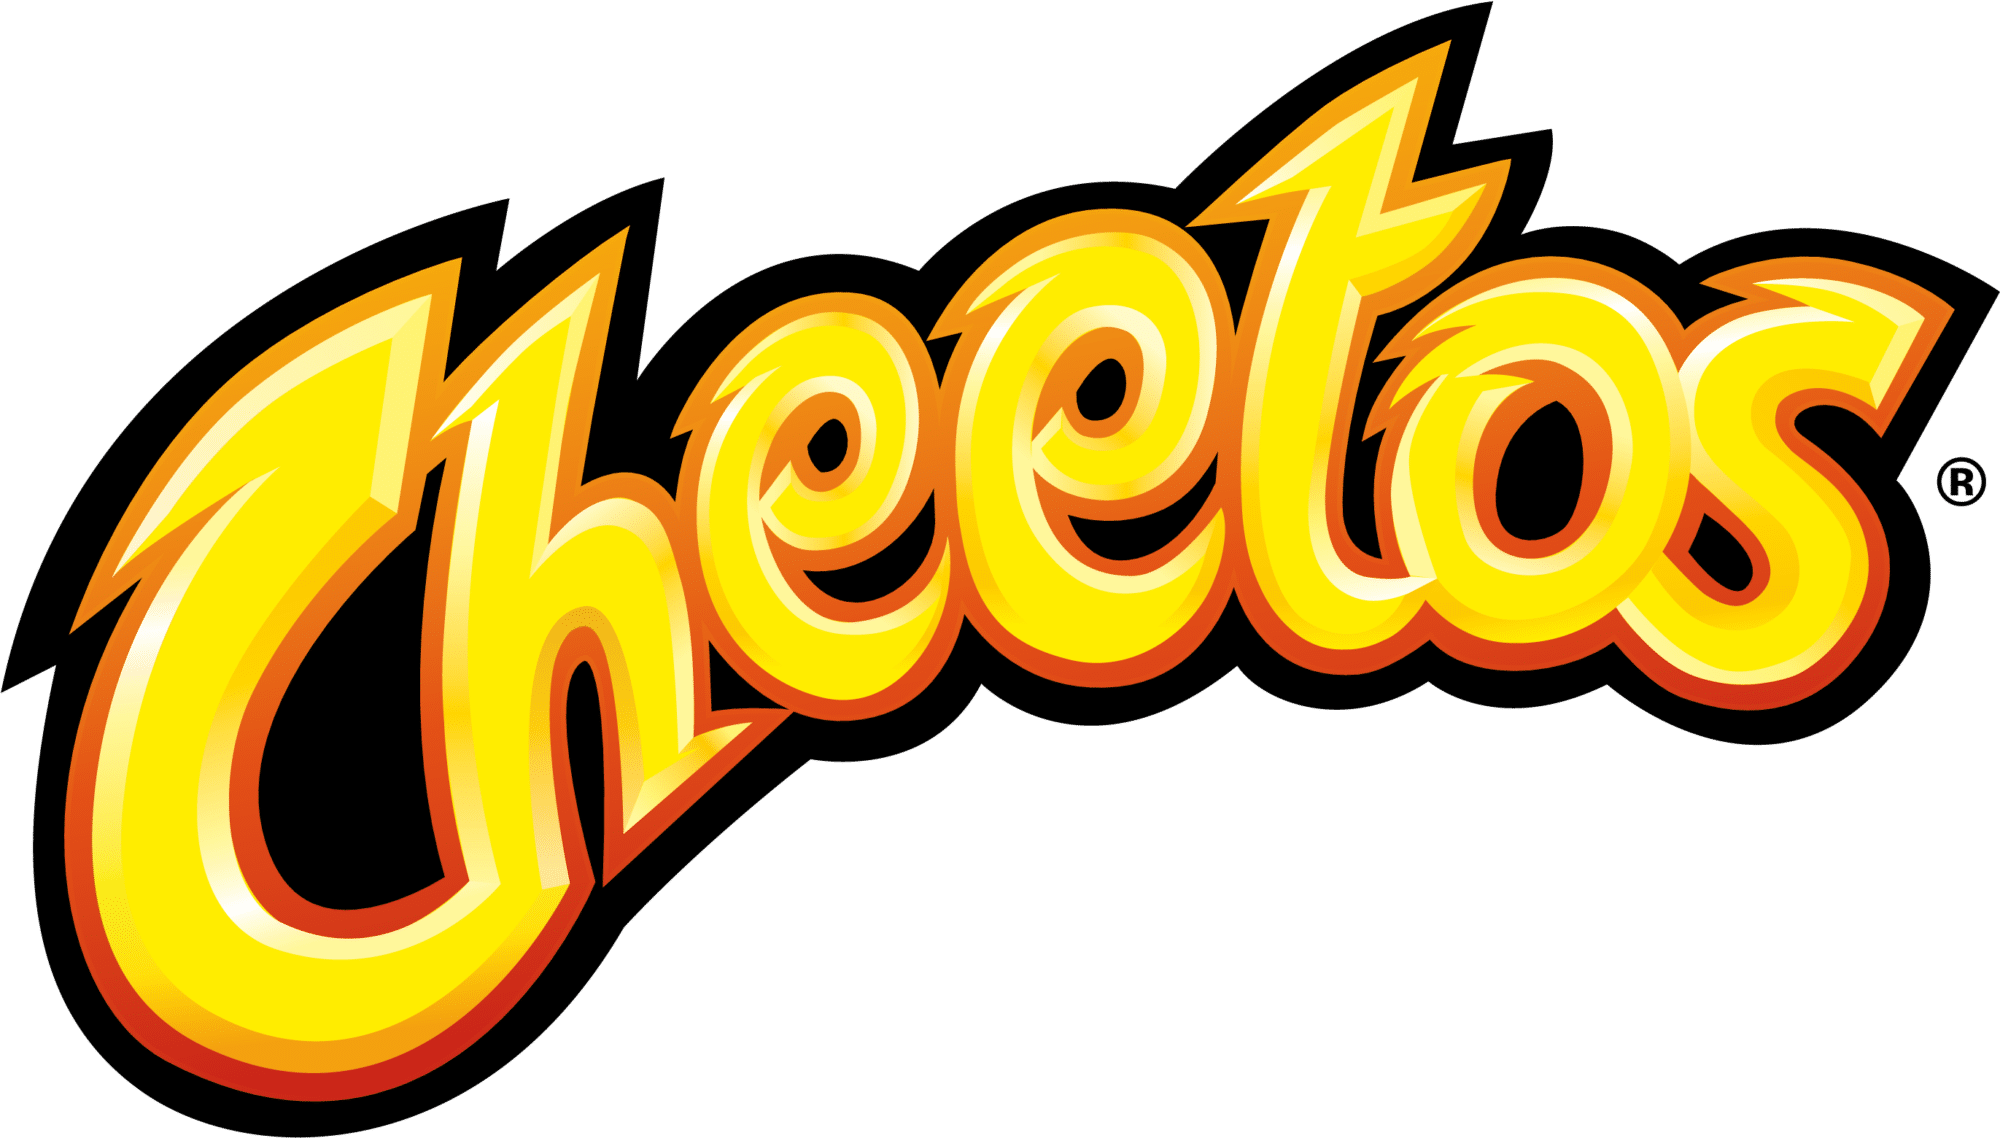 Cheetos logo